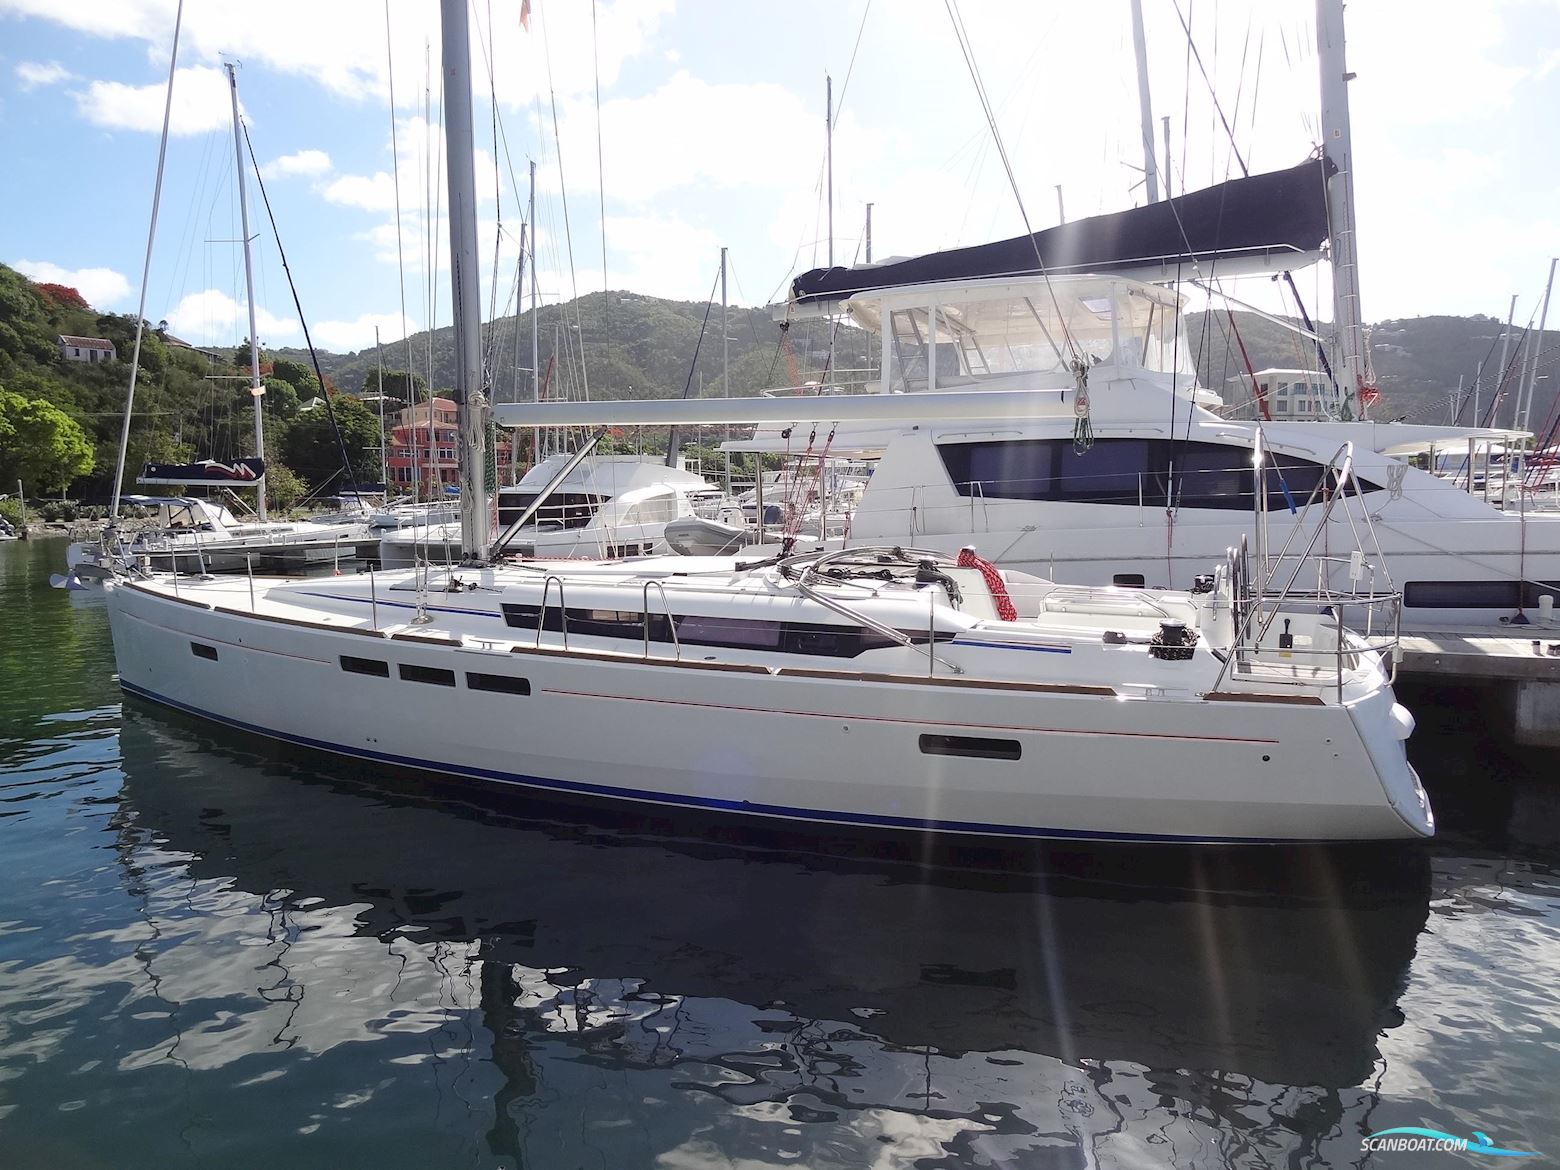 Jeanneau Sun Odyssey 519 Segelbåt 2017, med Yanmar motor, Virgin Islands